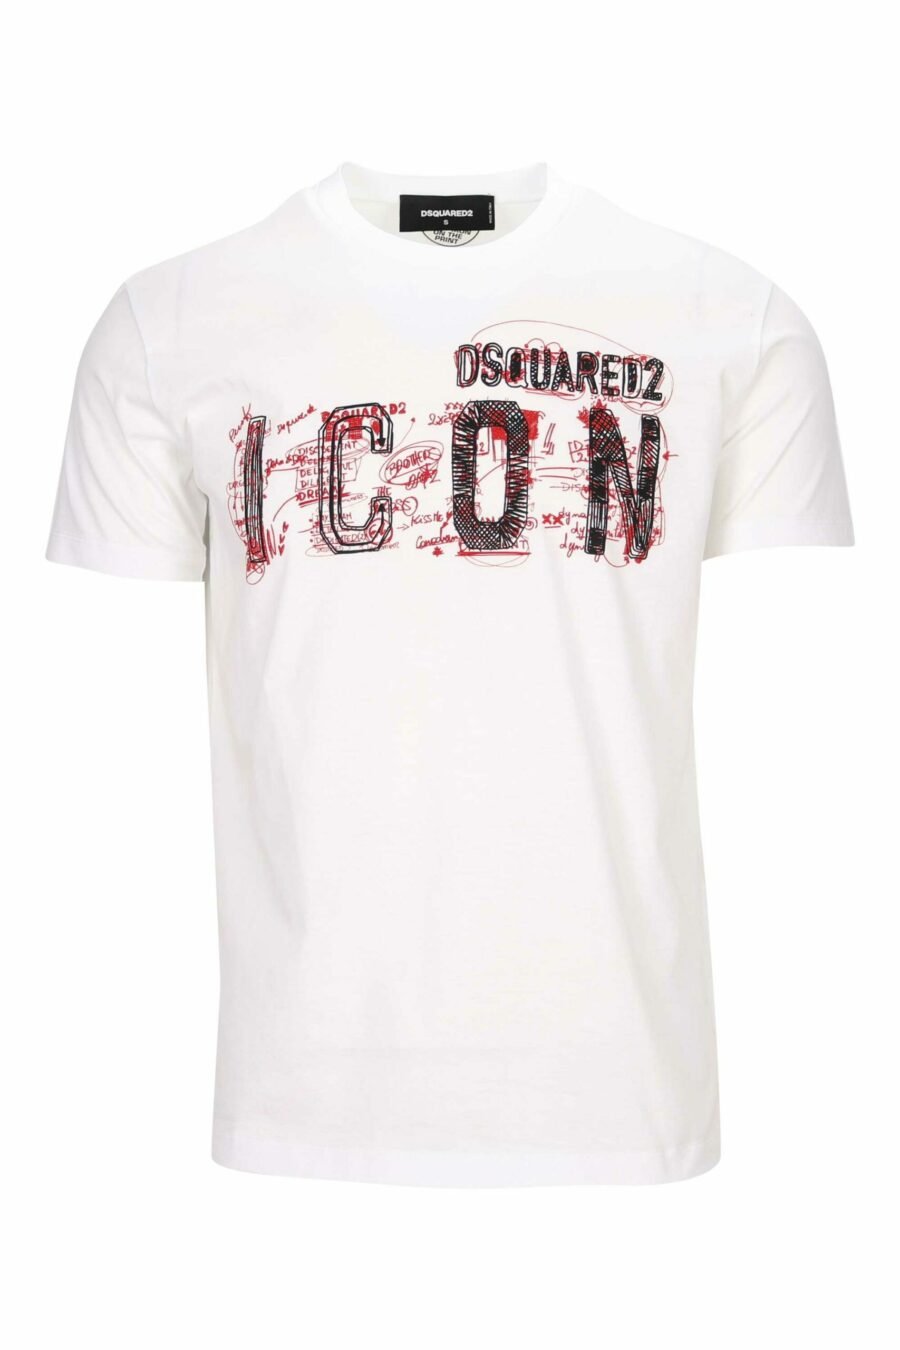 Camiseta blanca con maxilogo "icon" garabatos - 8054148362829 scaled